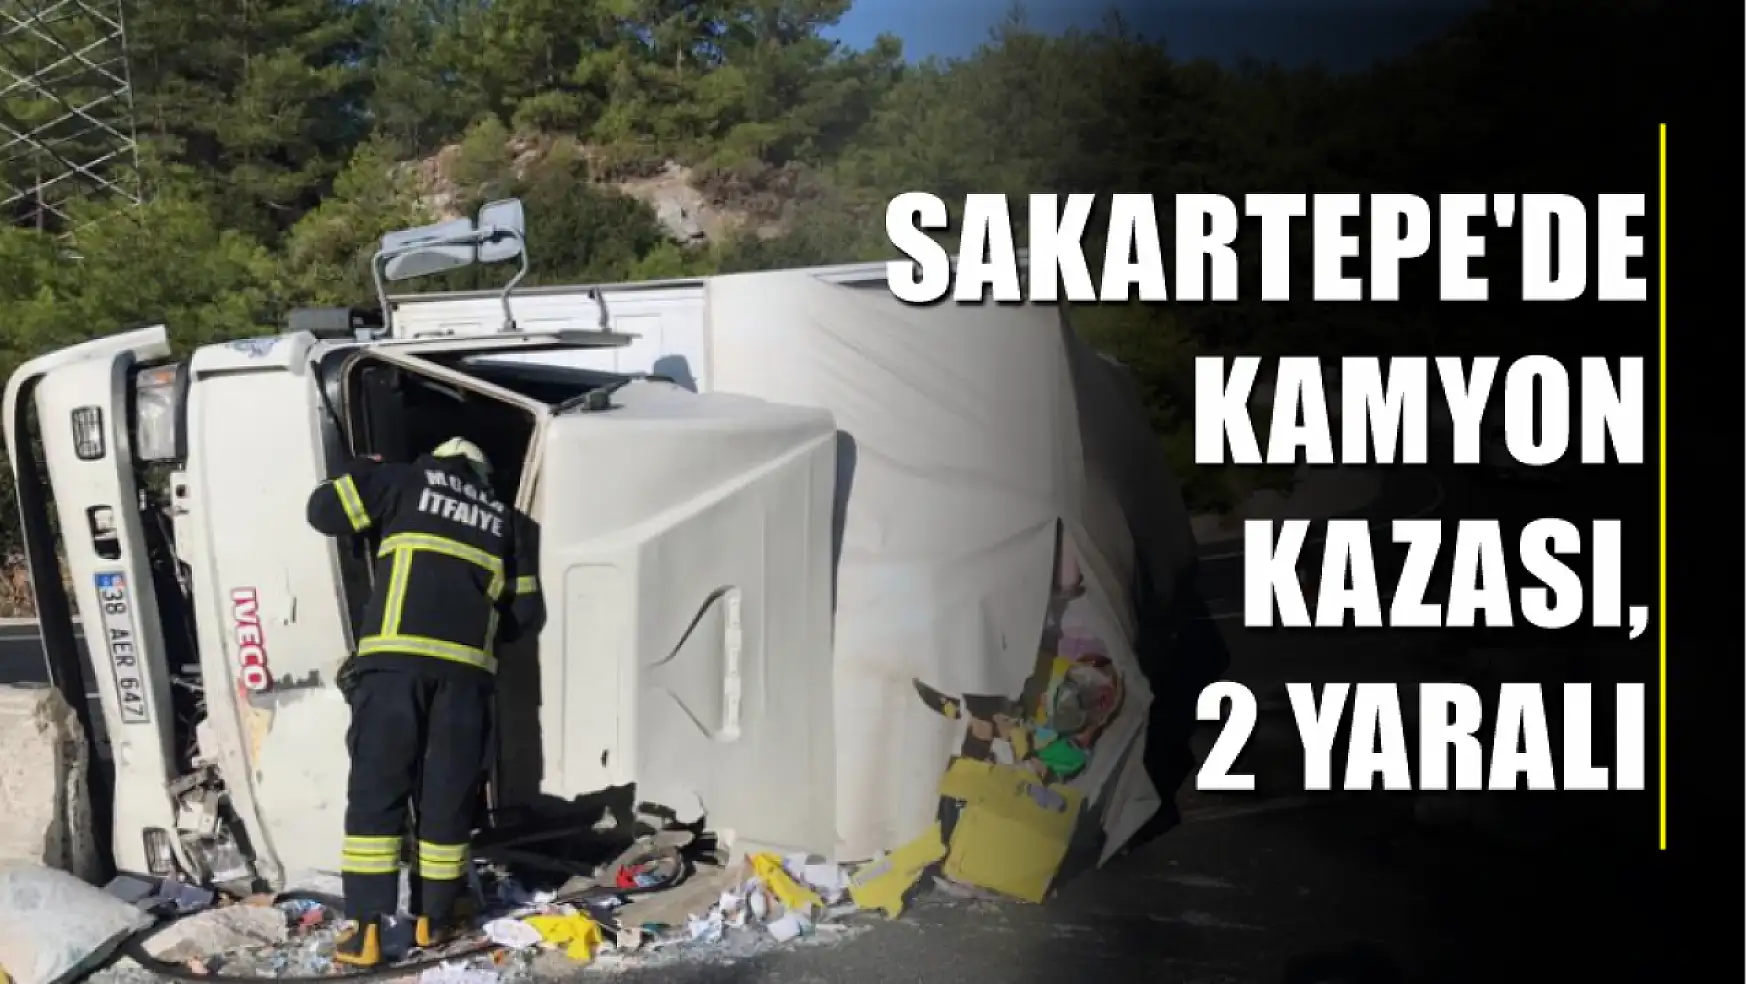 Sakartepe'de kamyon kazası, 2 yaralı